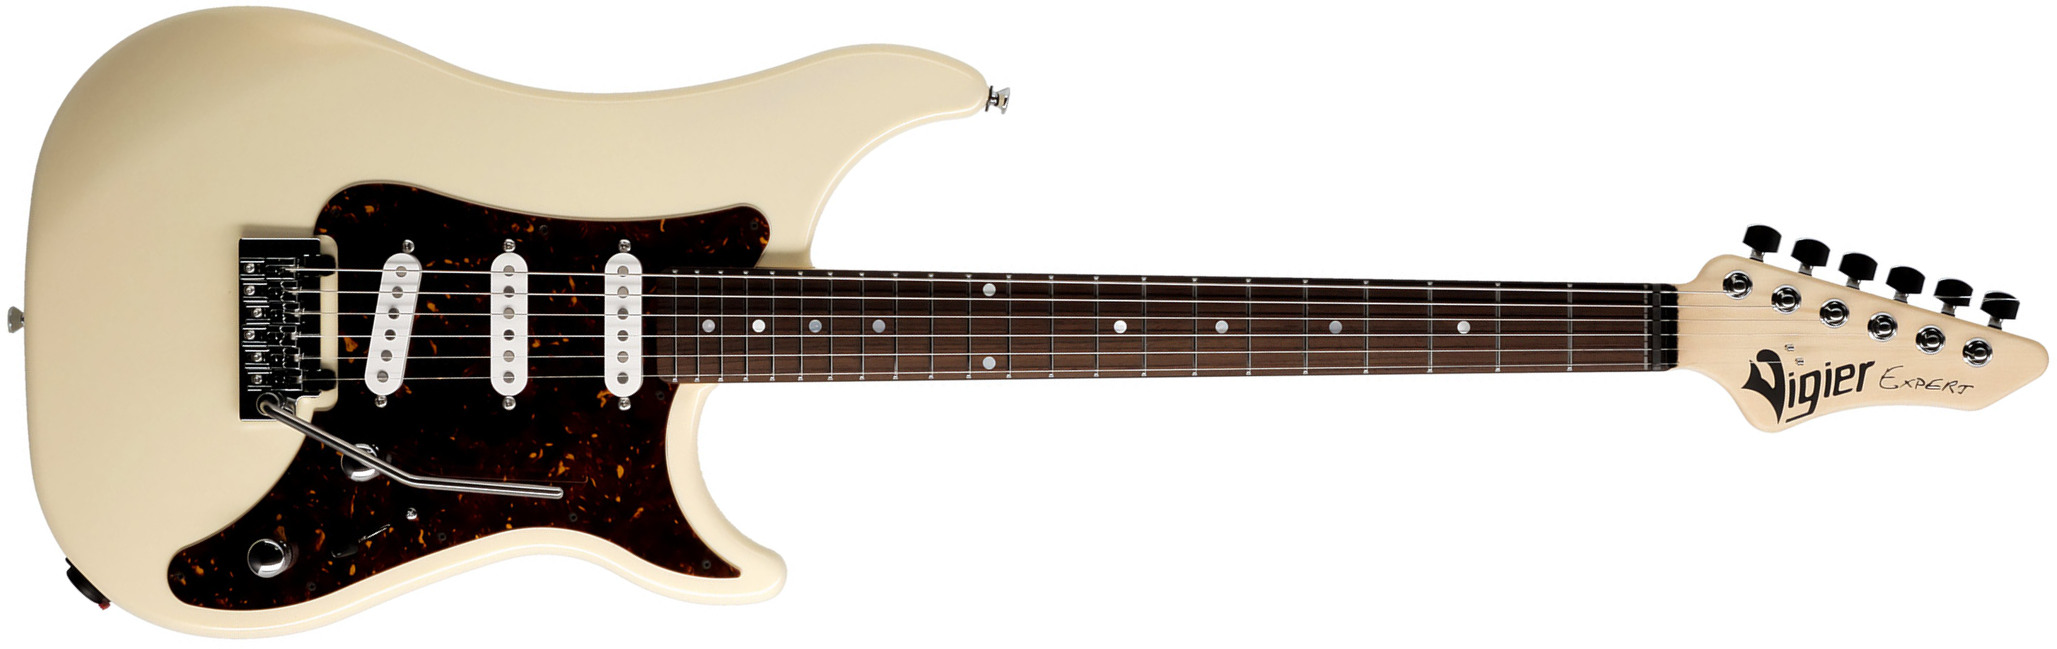 Vigier Expert Classic Rock 3s Trem Rw - Retro White - Str shape electric guitar - Main picture